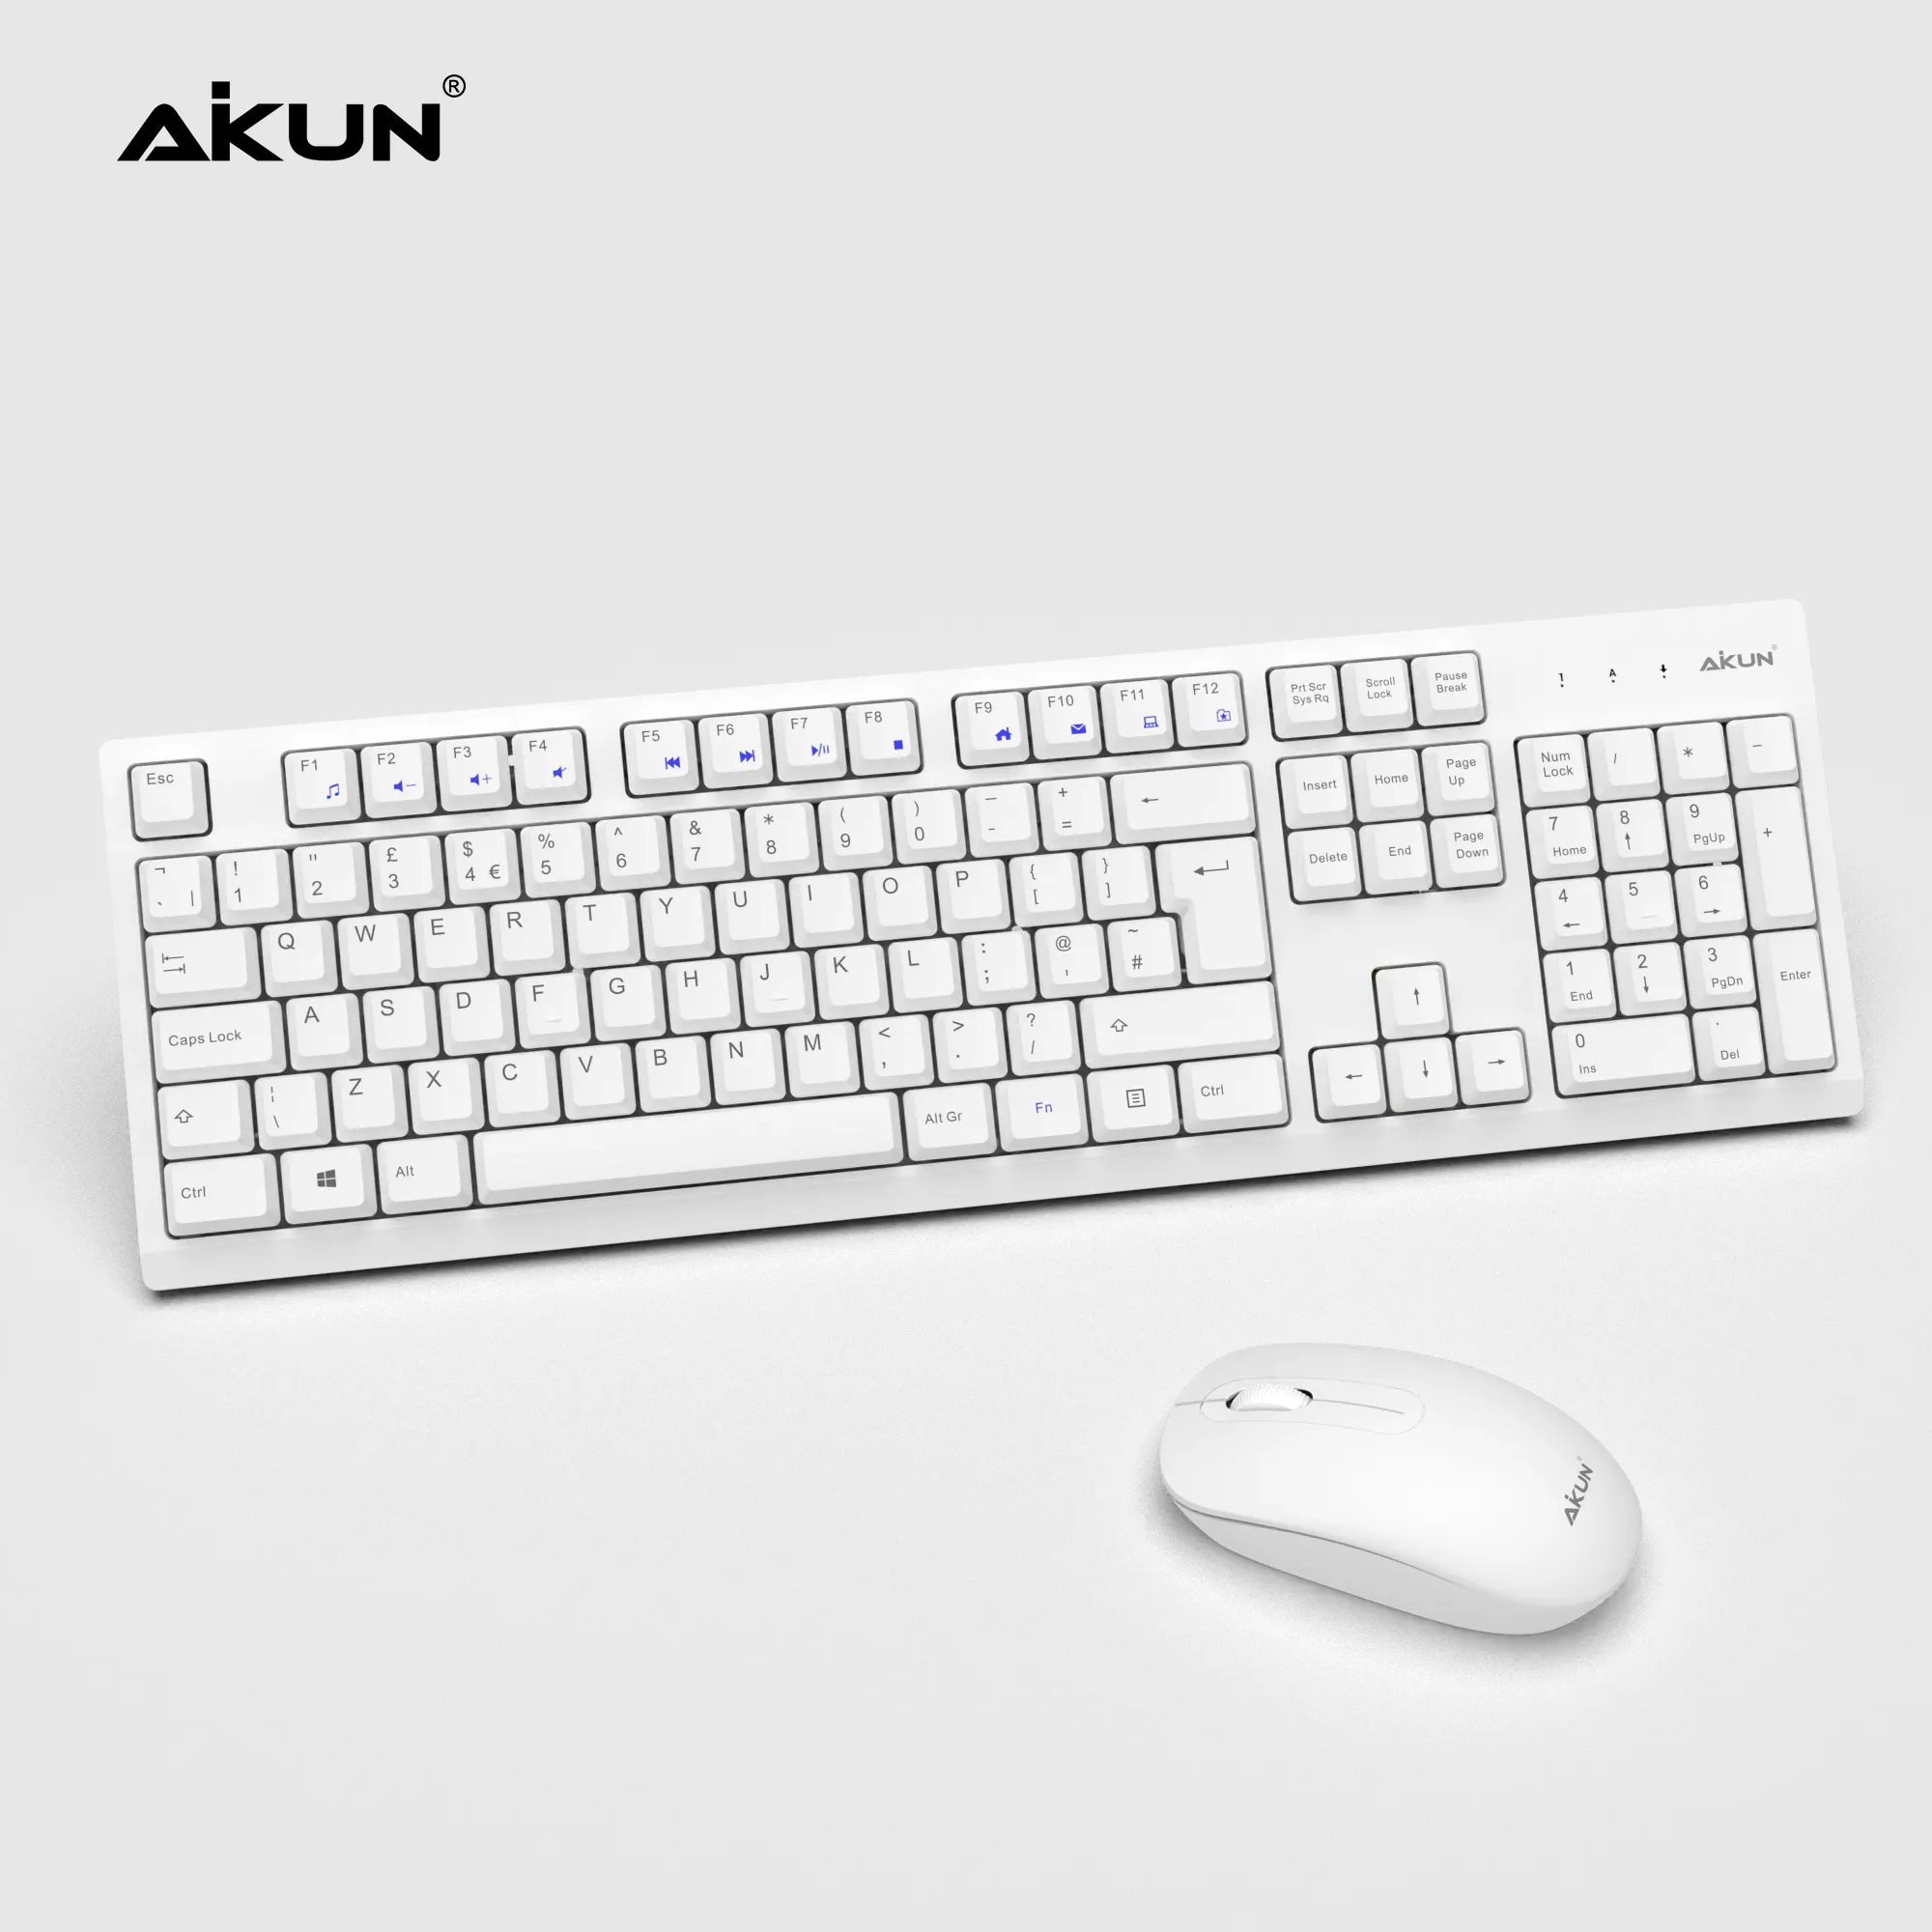 Aikun 2.4GワイヤレスキーボードおよびマウスCombo-BX2510 (白) 、長いバッテリー寿命、プラグアンドフォーゲットレシーバー